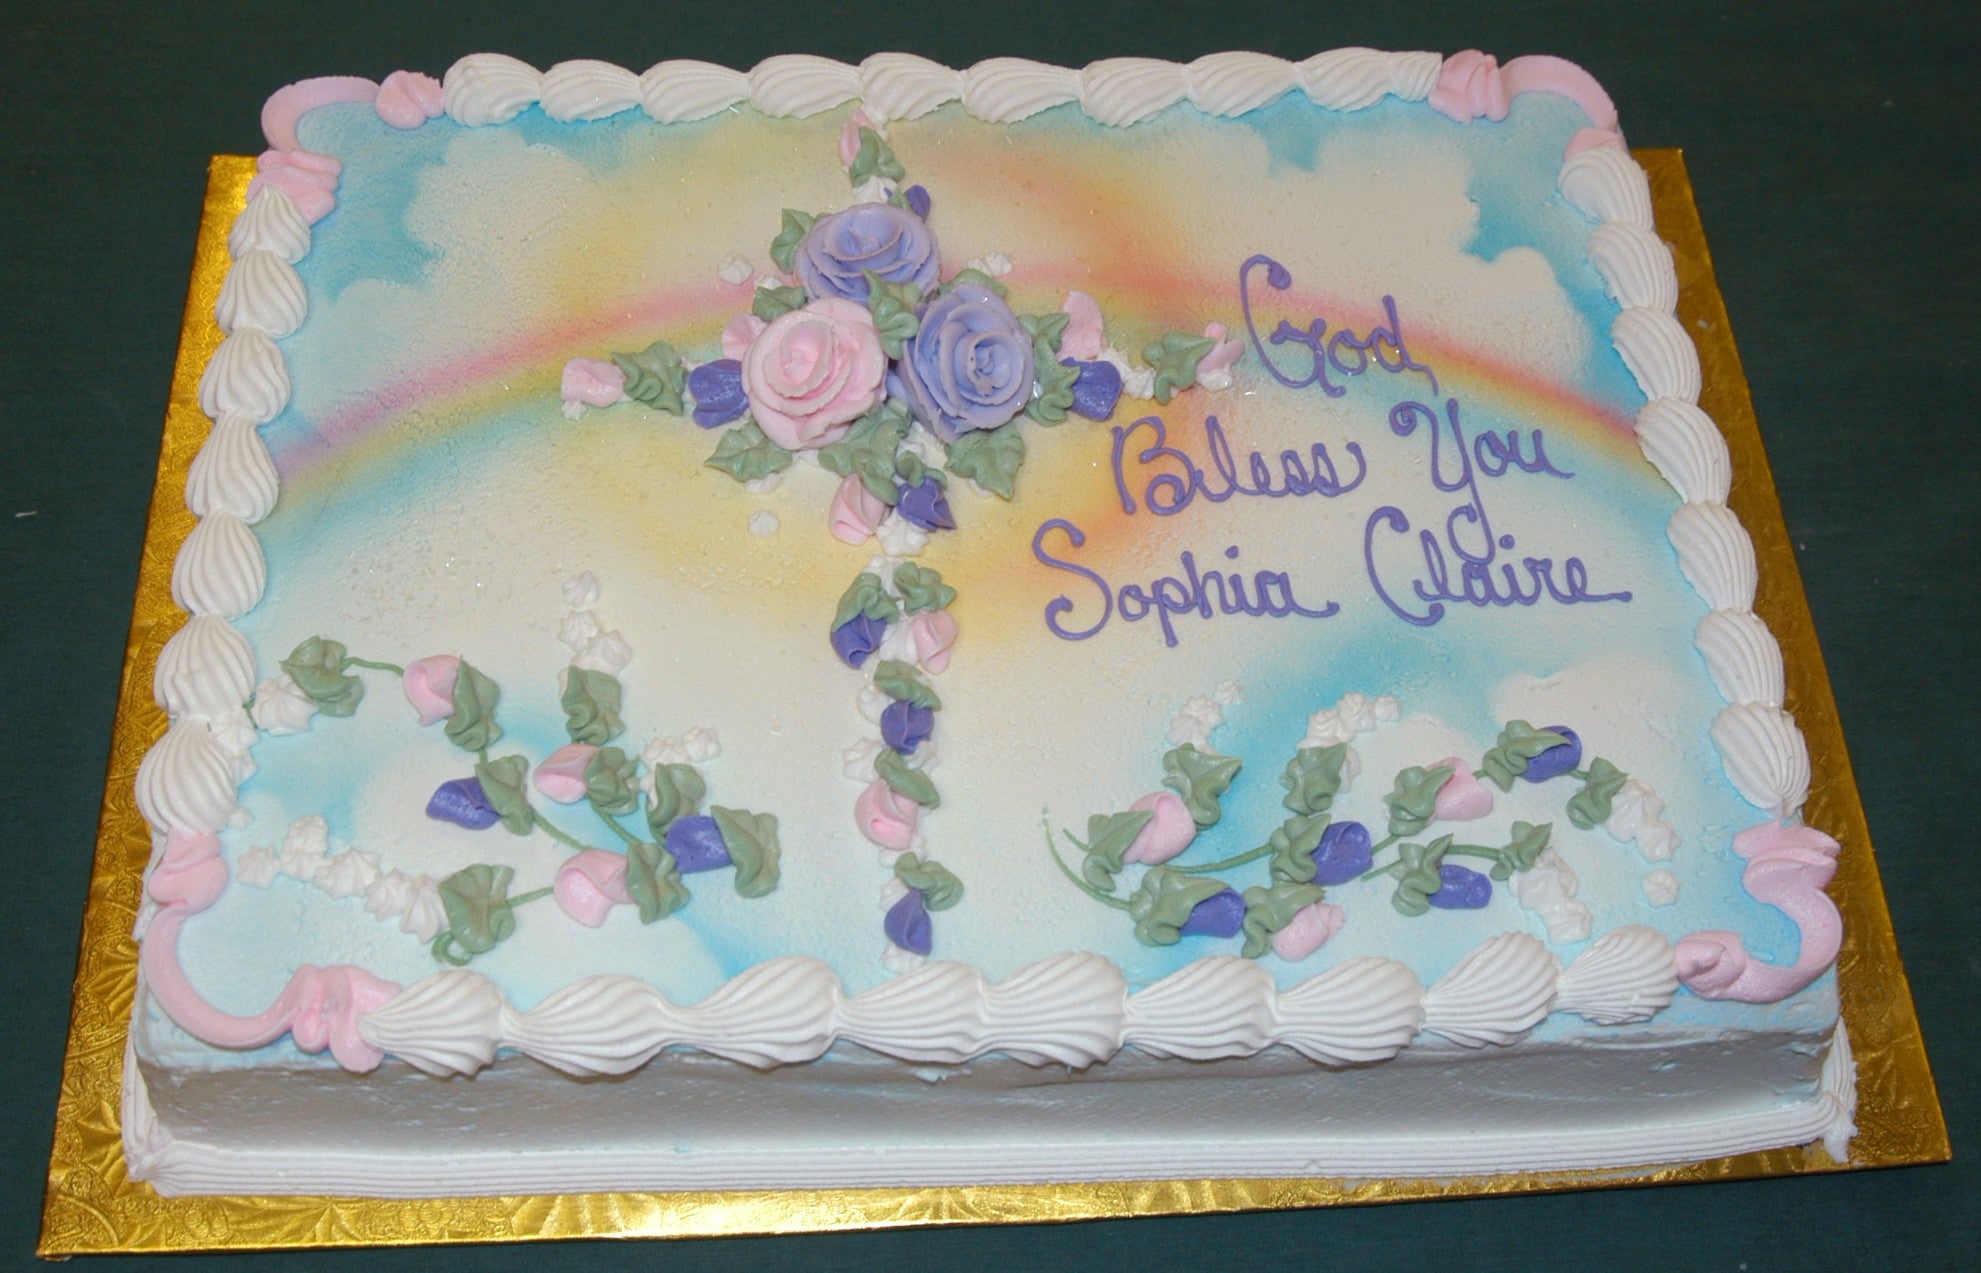 MaArthur's Bakery Custom Cake with Cross of Roses, Rainbows, Sun